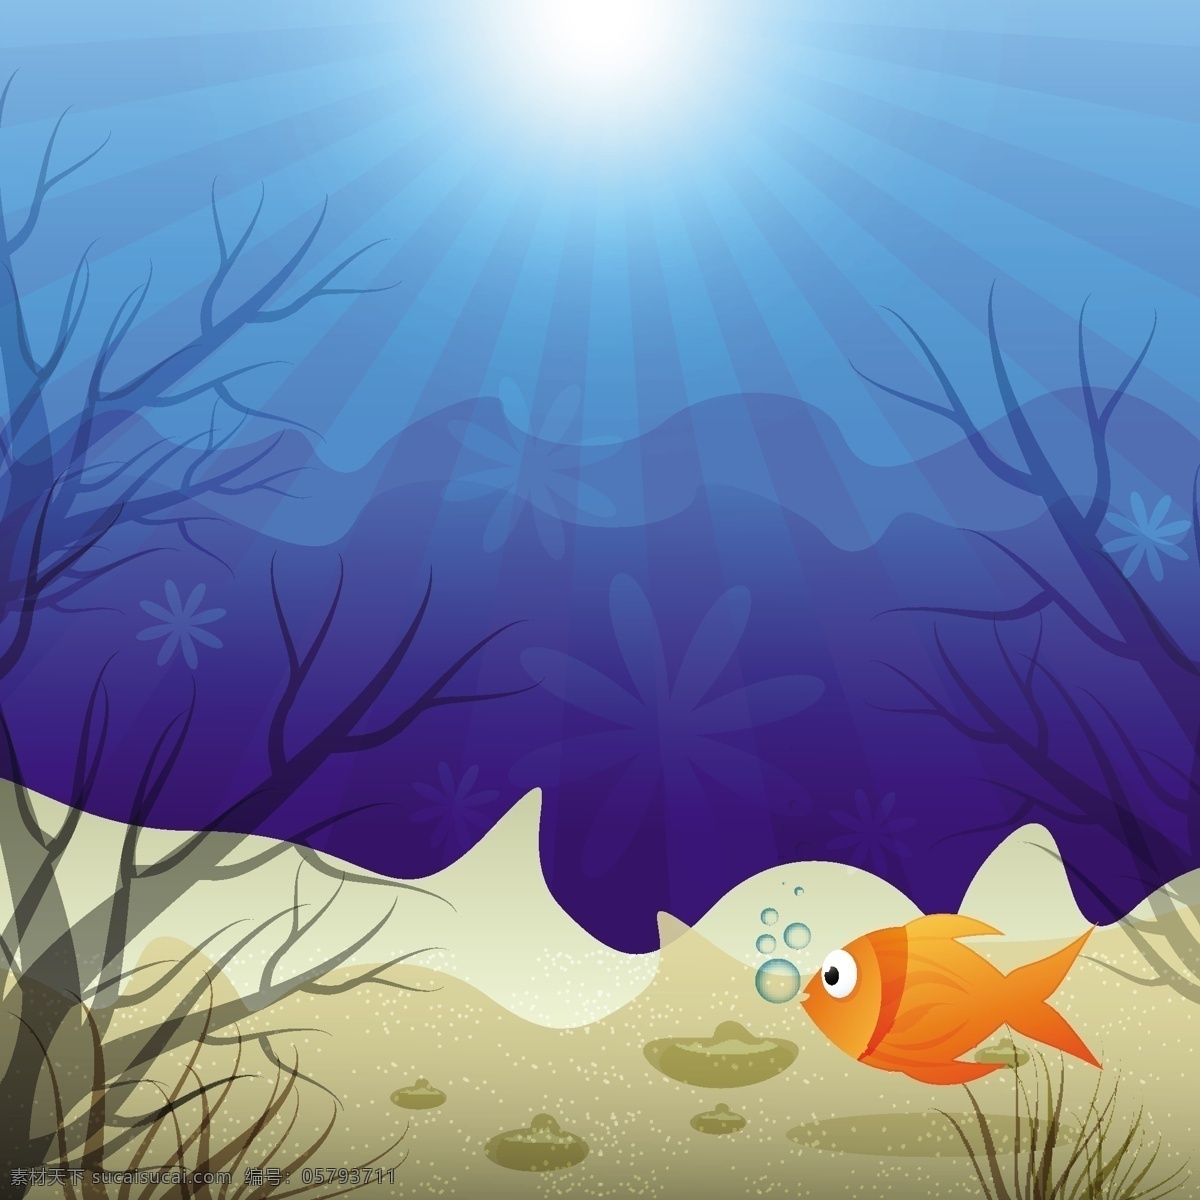 水下 场景 丰富多彩 背景 水下场景 鱼 沙 水 植物 阳光 蓝色背景 水下的背景下 水下的背景 水下鱼鱼壁纸 壁纸 海洋生物